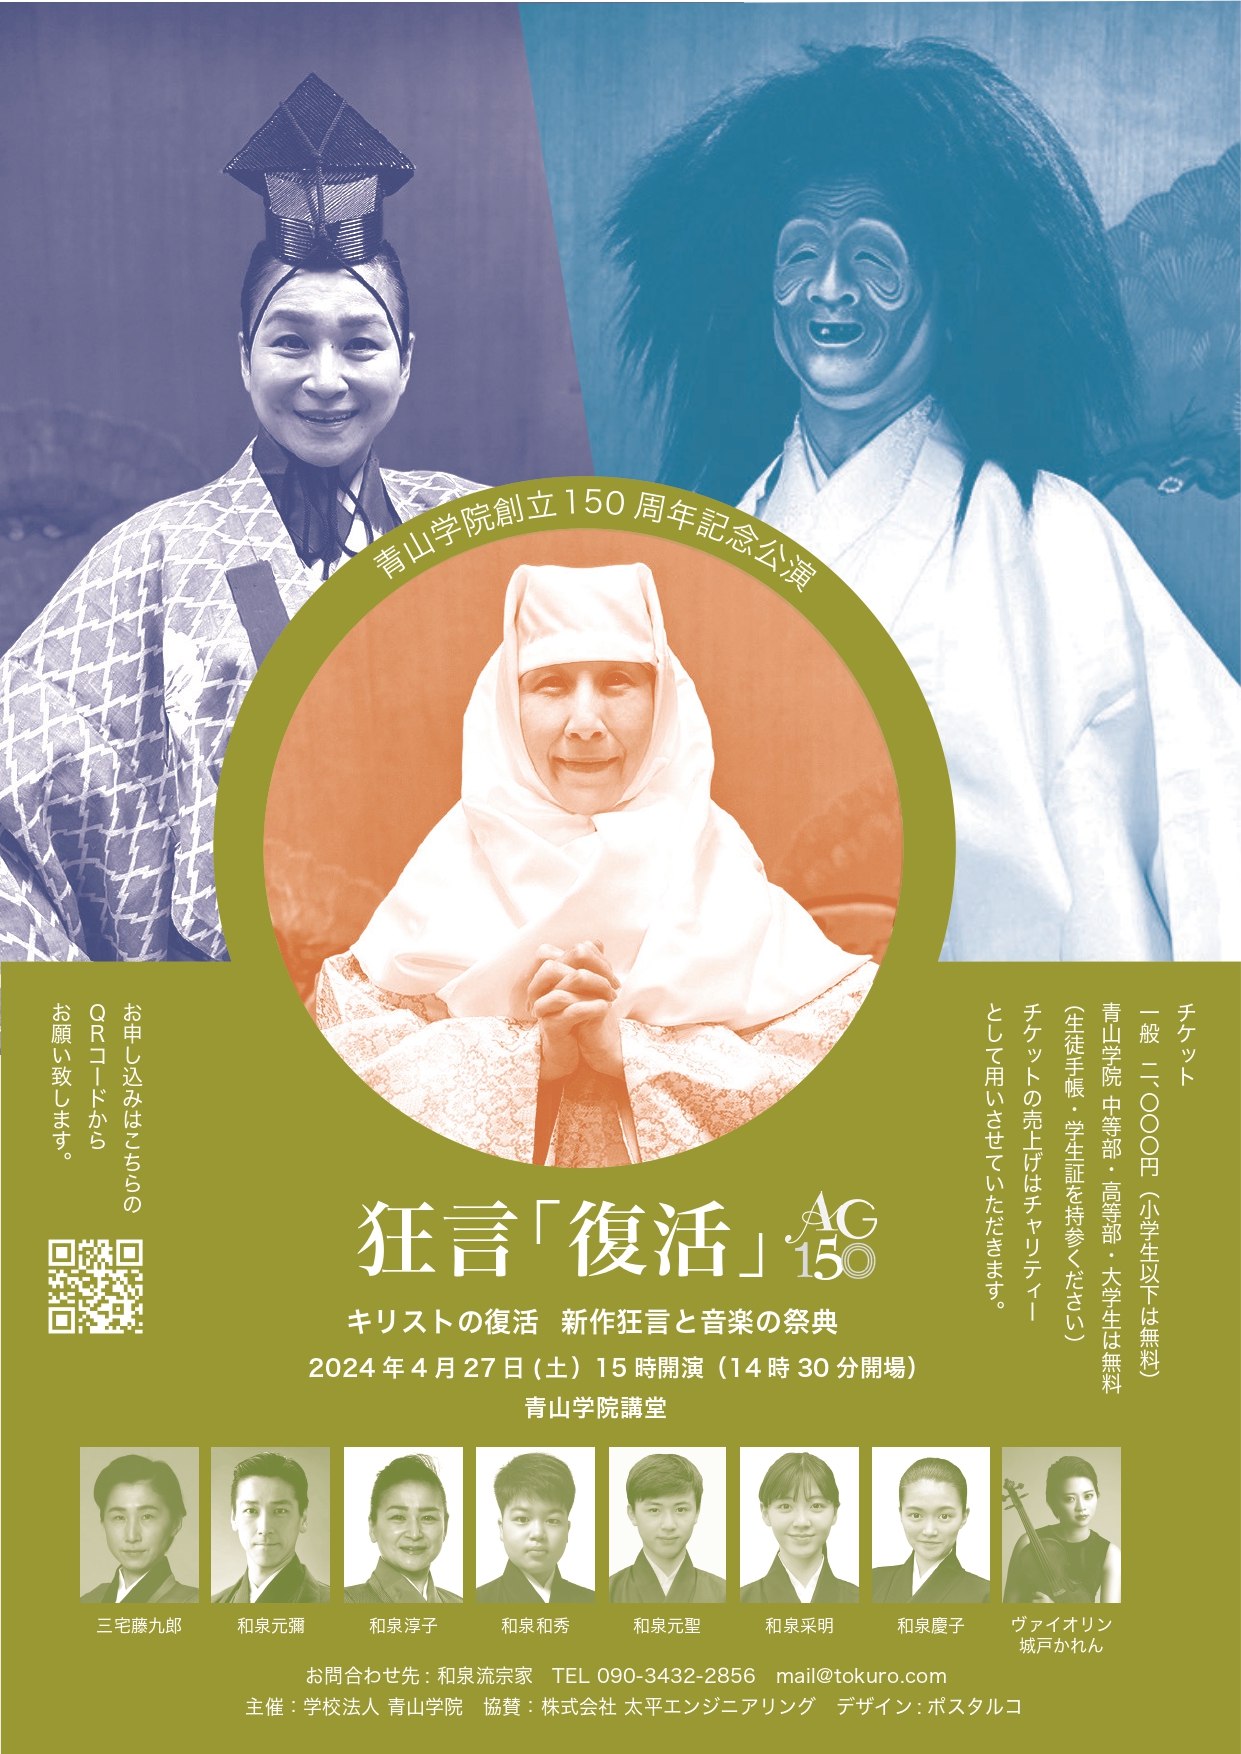 青山学院創立150周年記念公演 狂言「復活」